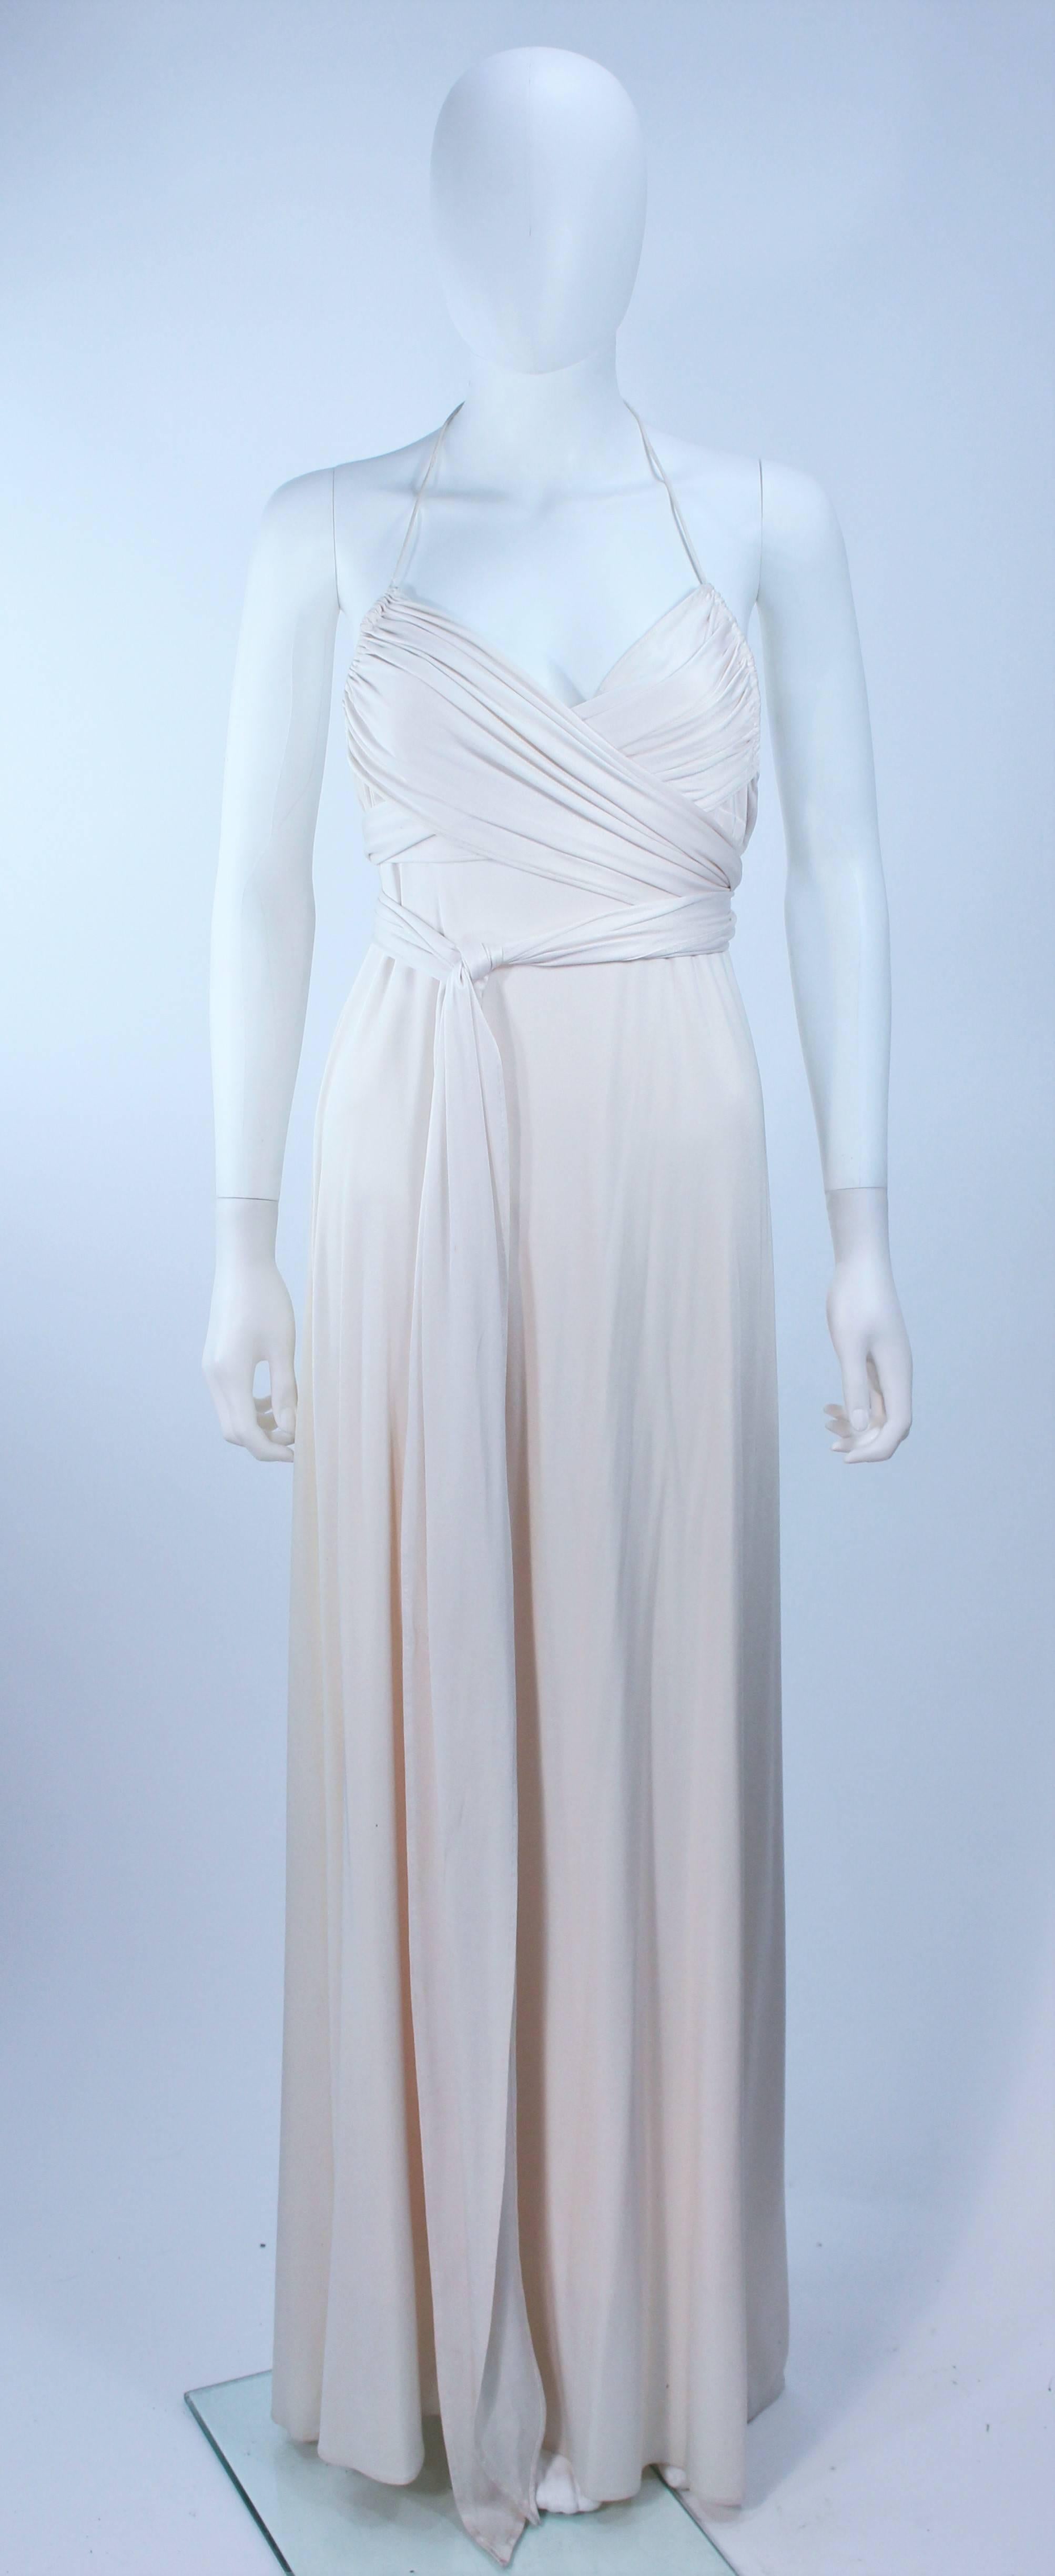 Cette Elizabeth Mason Couture  est composée d'un jersey de soie blanc. Cette robe dos nu présente un style enveloppant avec un lien à la taille et un buste plissé. Design/One chic sans effort. Fabriqué à Hille. 

Il s'agit d'une commande sur mesure.